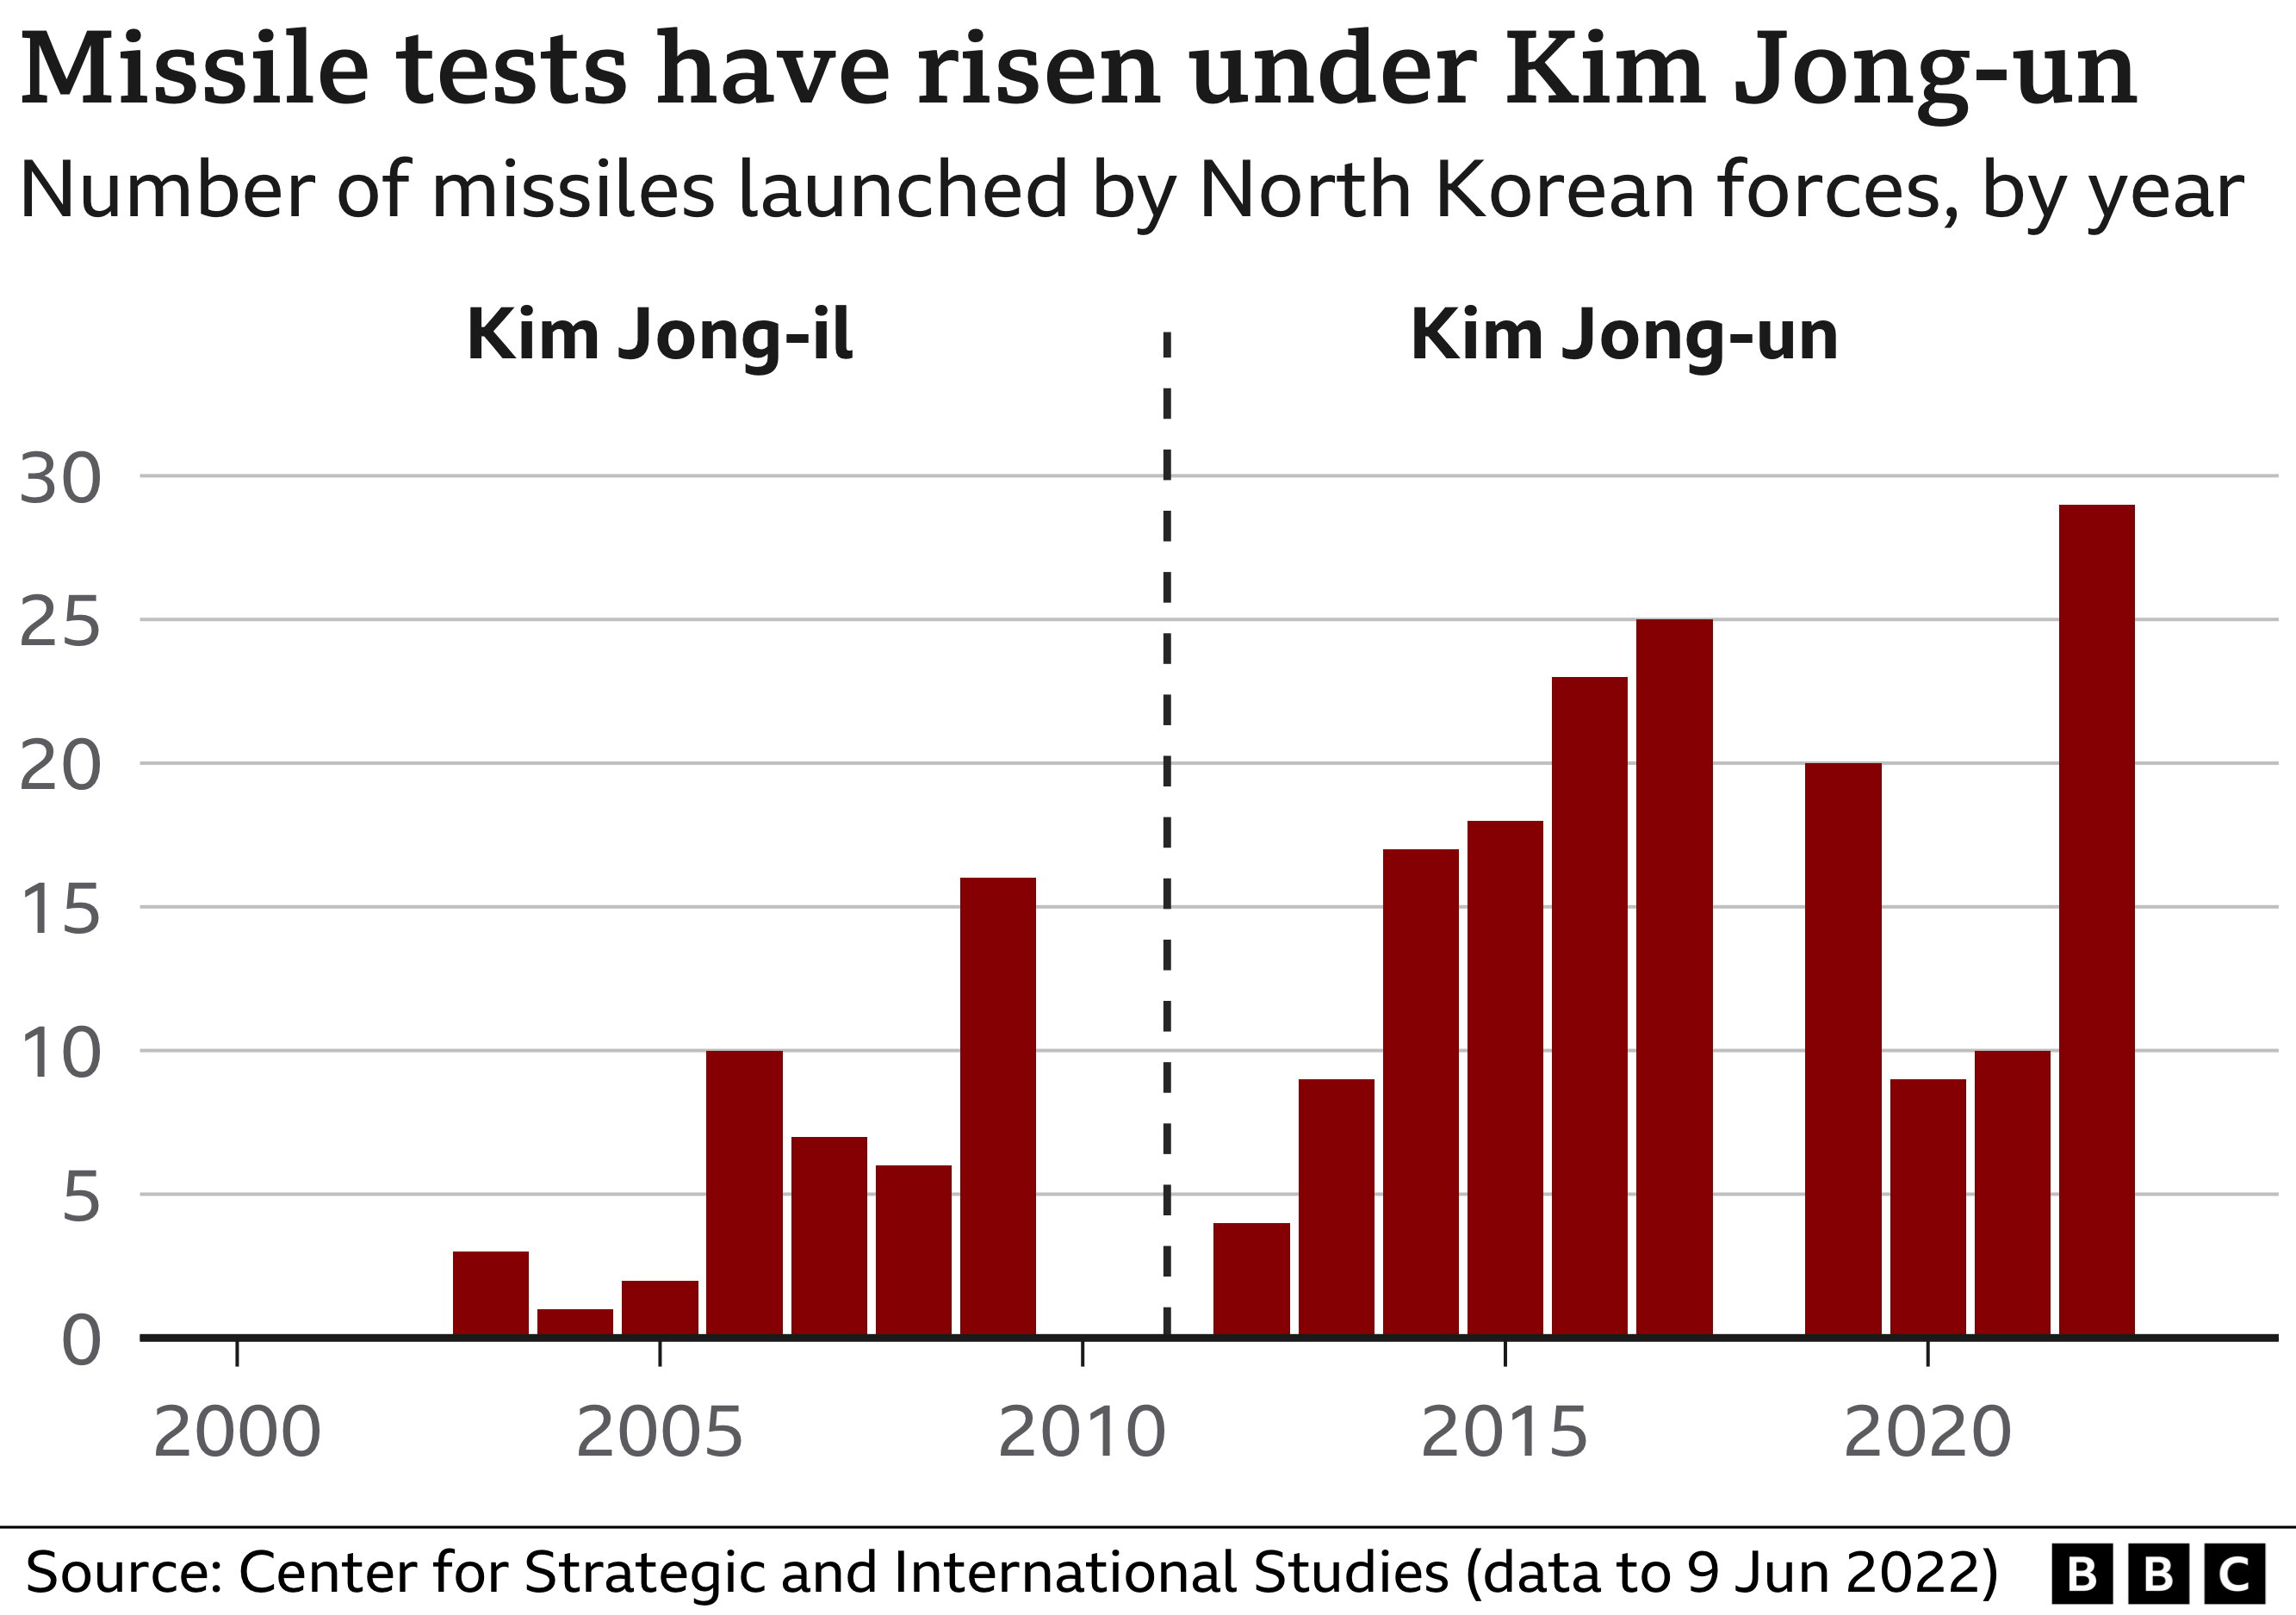 กราฟแสดงจำนวนการทดสอบขีปนาวุธภายใต้การนำของ คิม จอง อึน